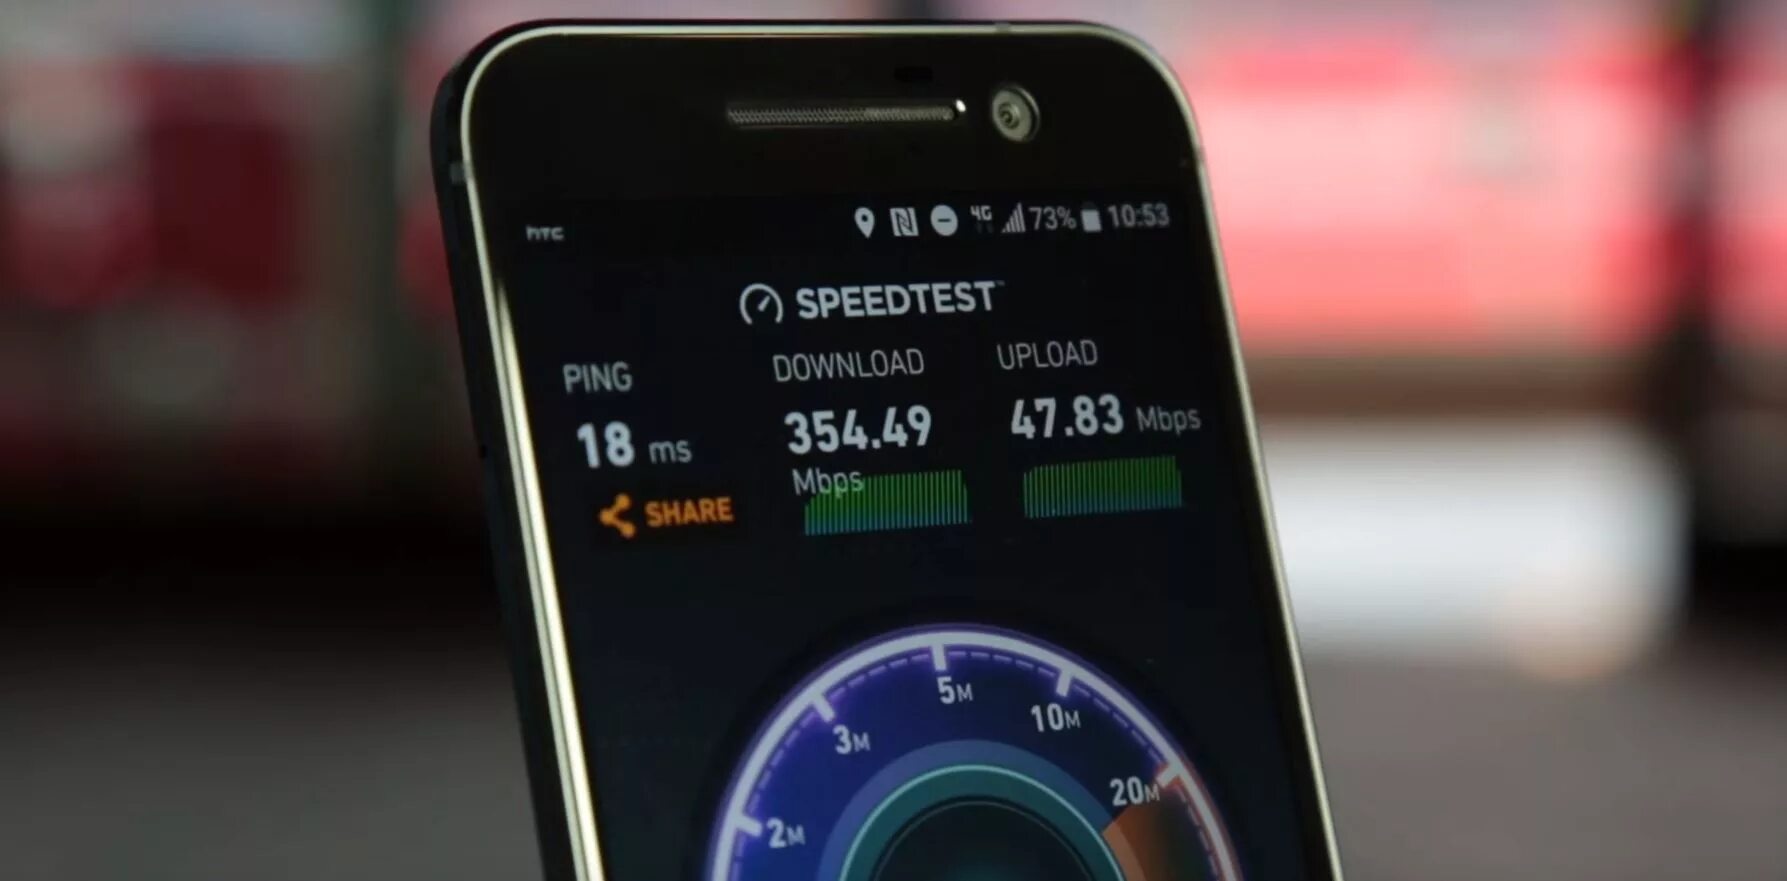 4g без интернета. Сотовый 4g интернет. Скоростной мобильный интернет. Режим 4g+. Частный дом Speedtest.